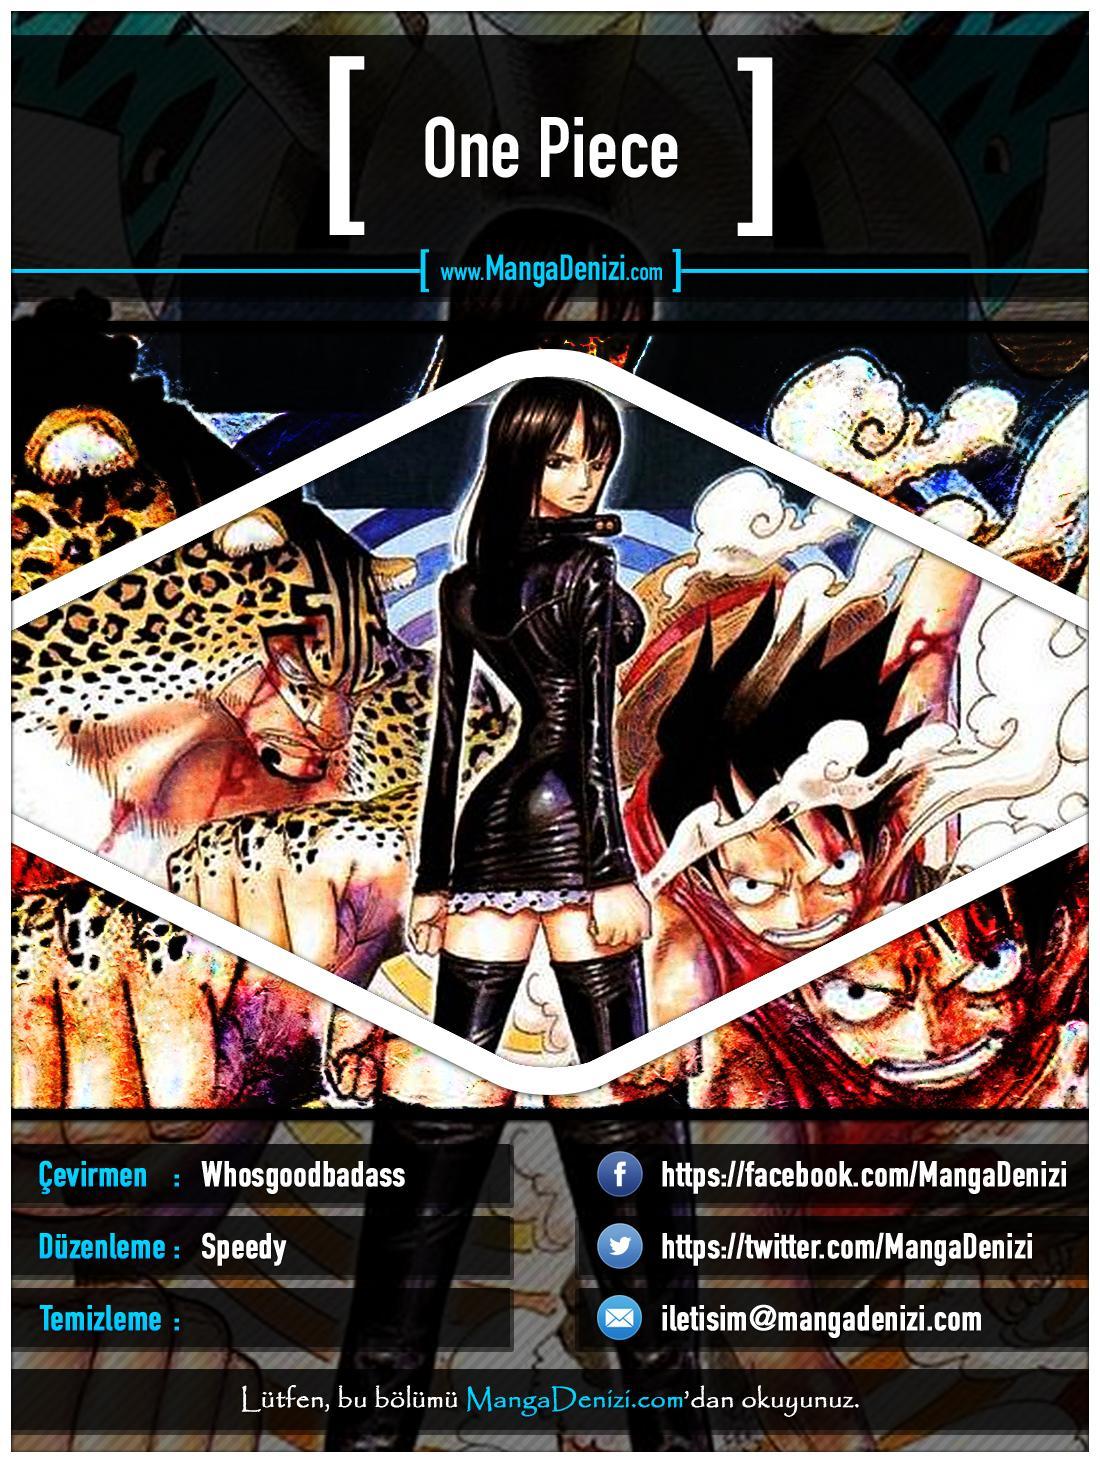 One Piece [Renkli] mangasının 0374 bölümünün 1. sayfasını okuyorsunuz.